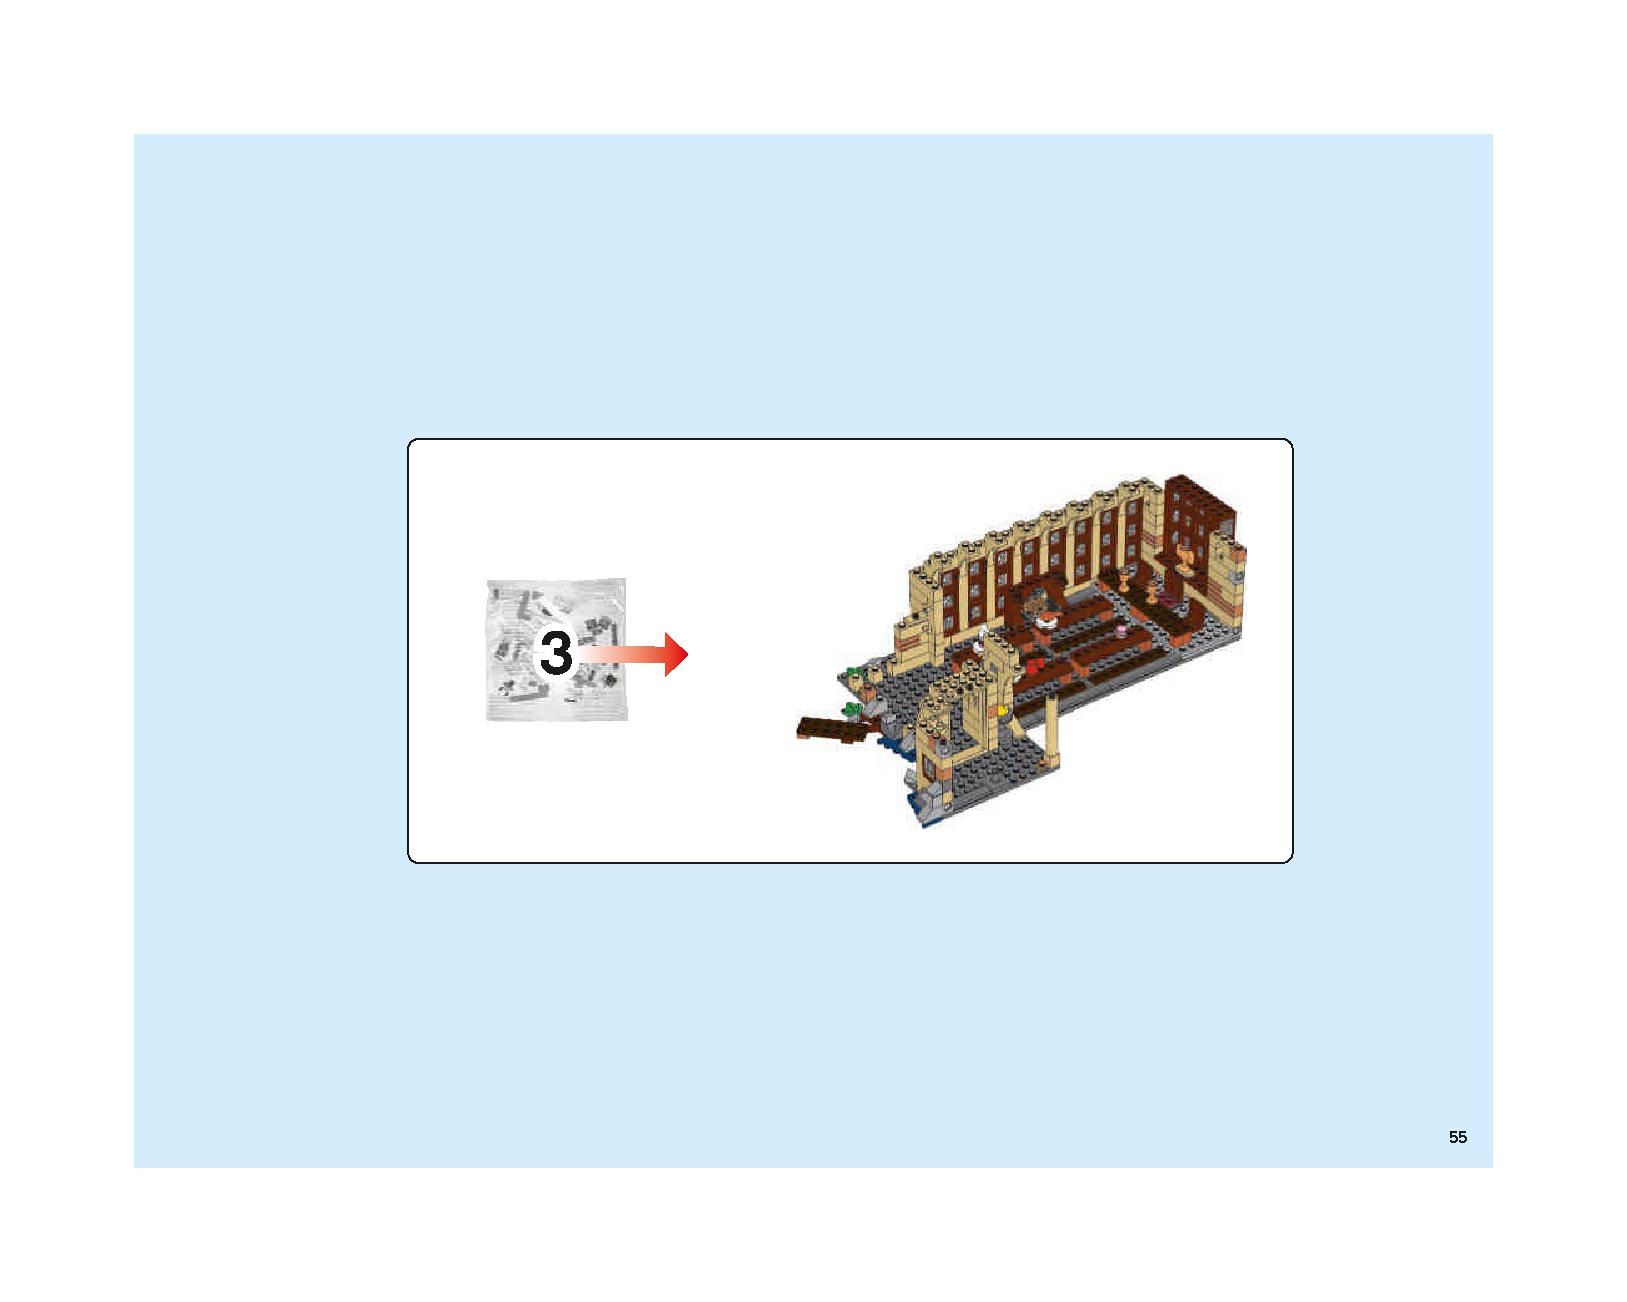 ホグワーツの大広間 75954 レゴの商品情報 レゴの説明書・組立方法 55 page